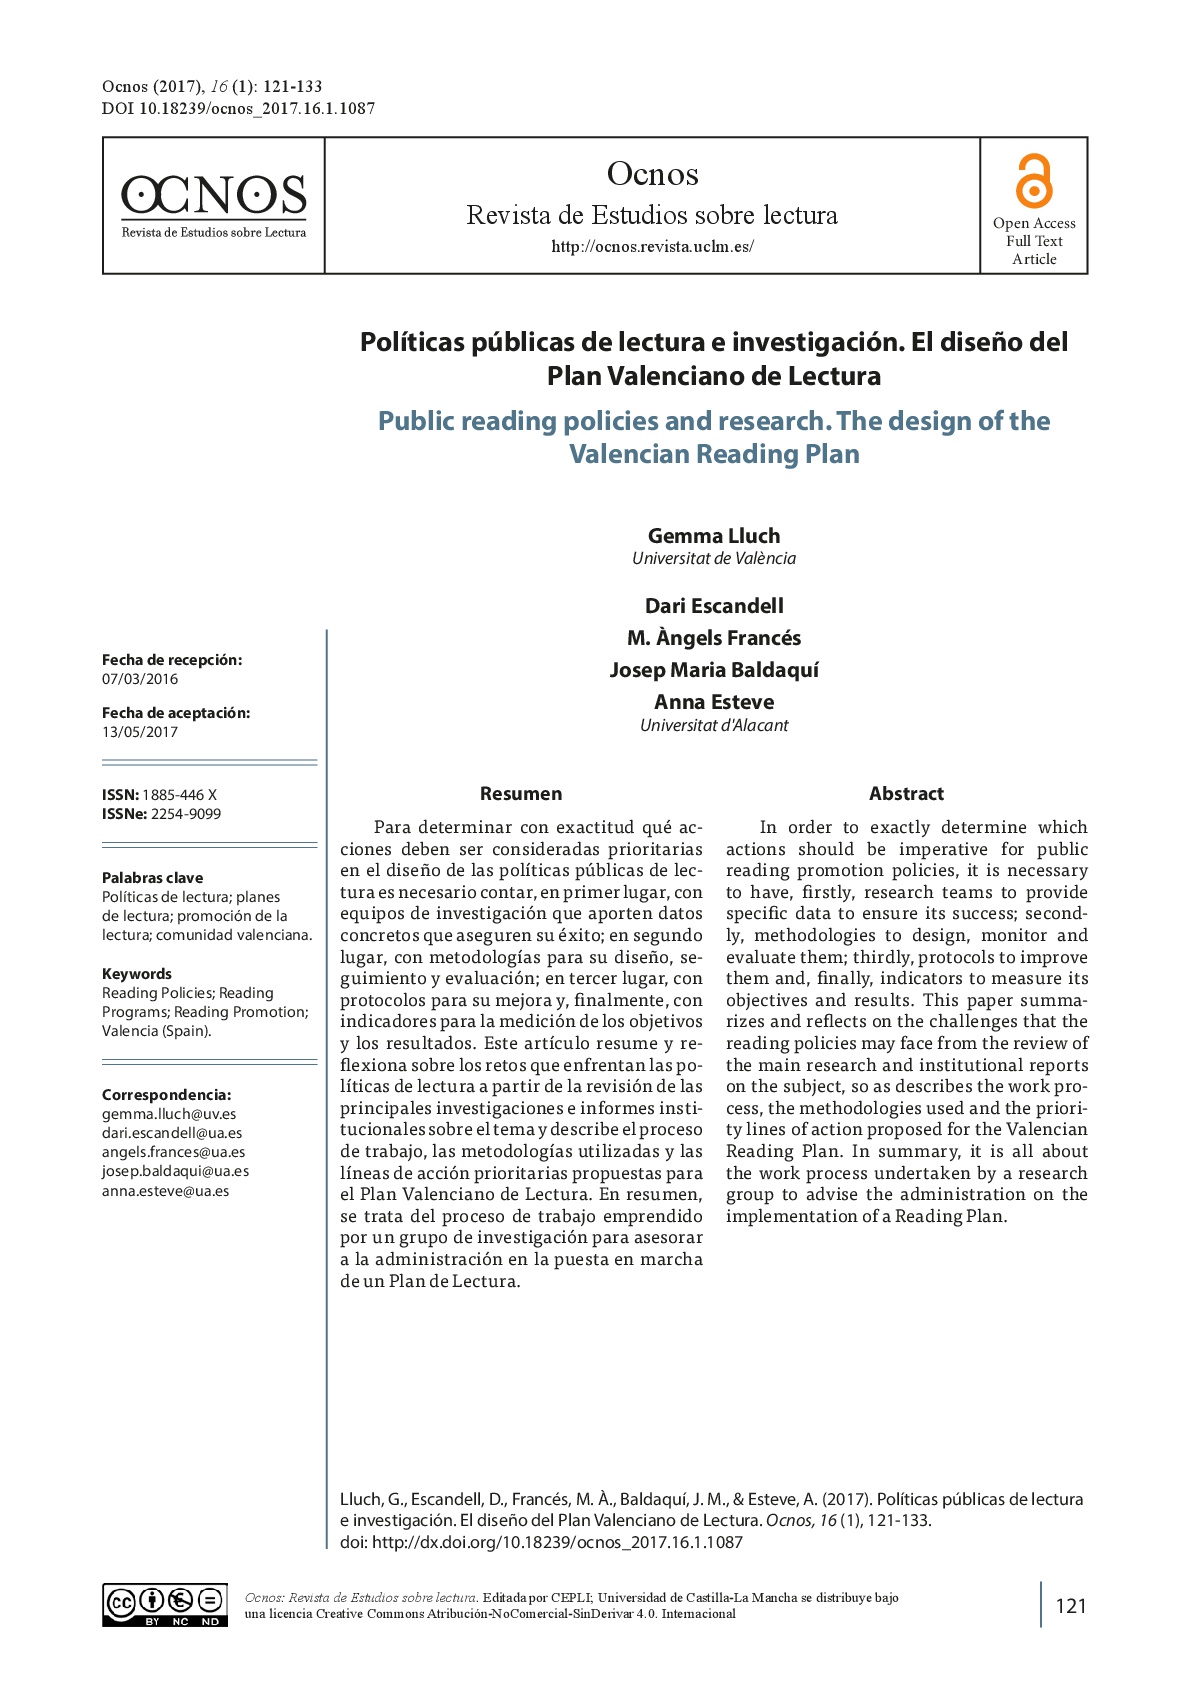 Políticas públicas de lectura e investigación. El diseño del Plan Valenciano de Lectura